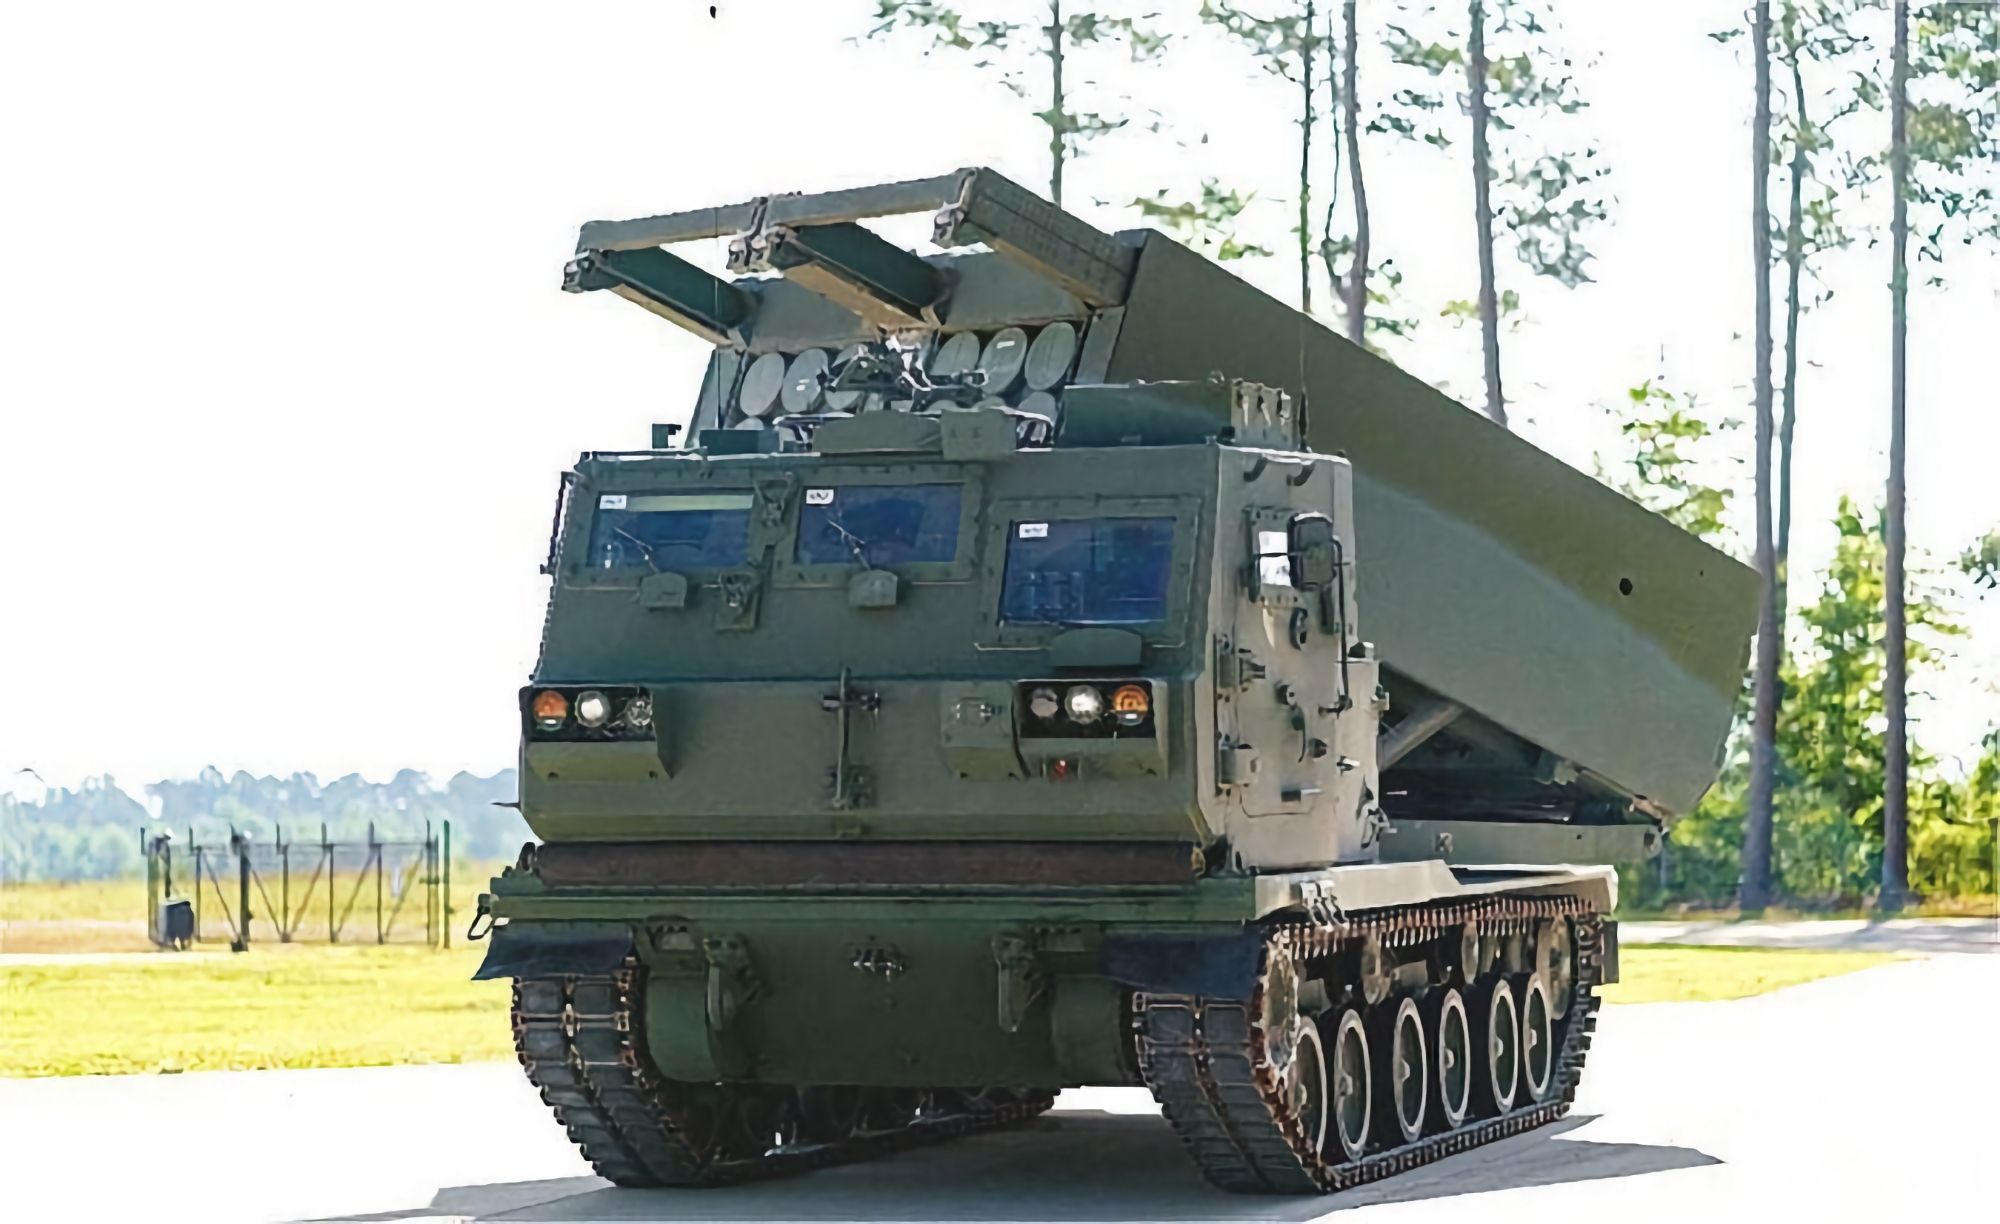 USA har bestilt Lockheed Martin til å oppgradere flere M270 multirakettkastere, som vil kunne avfyre PrSM-missiler med en rekkevidde på 500 kilometer